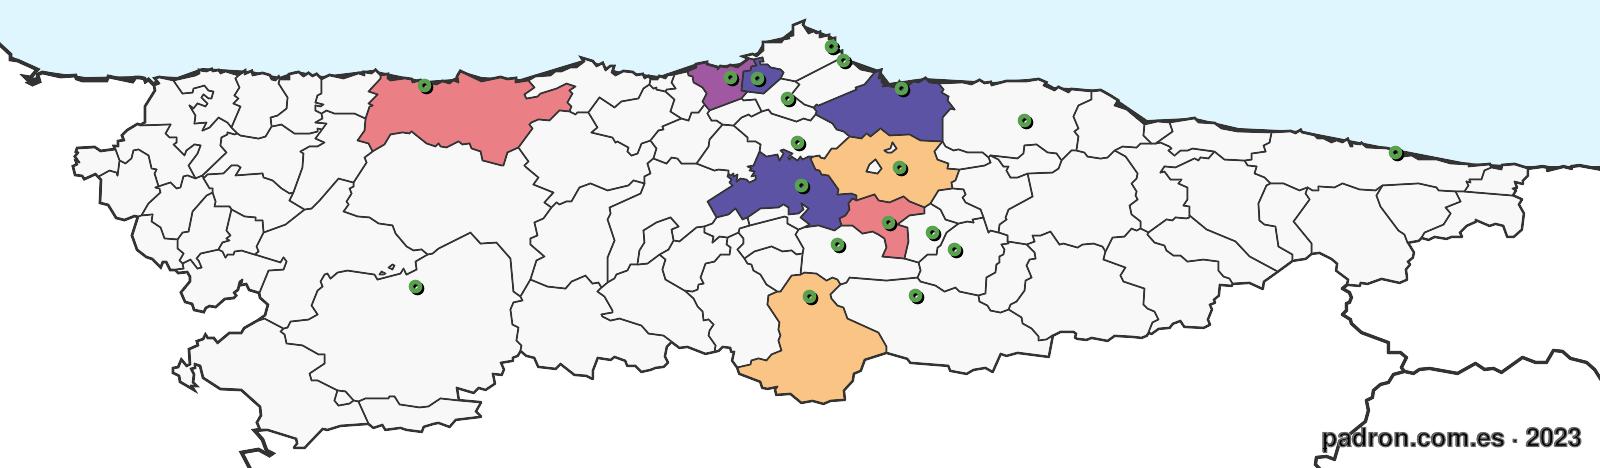 lituanos en asturias.